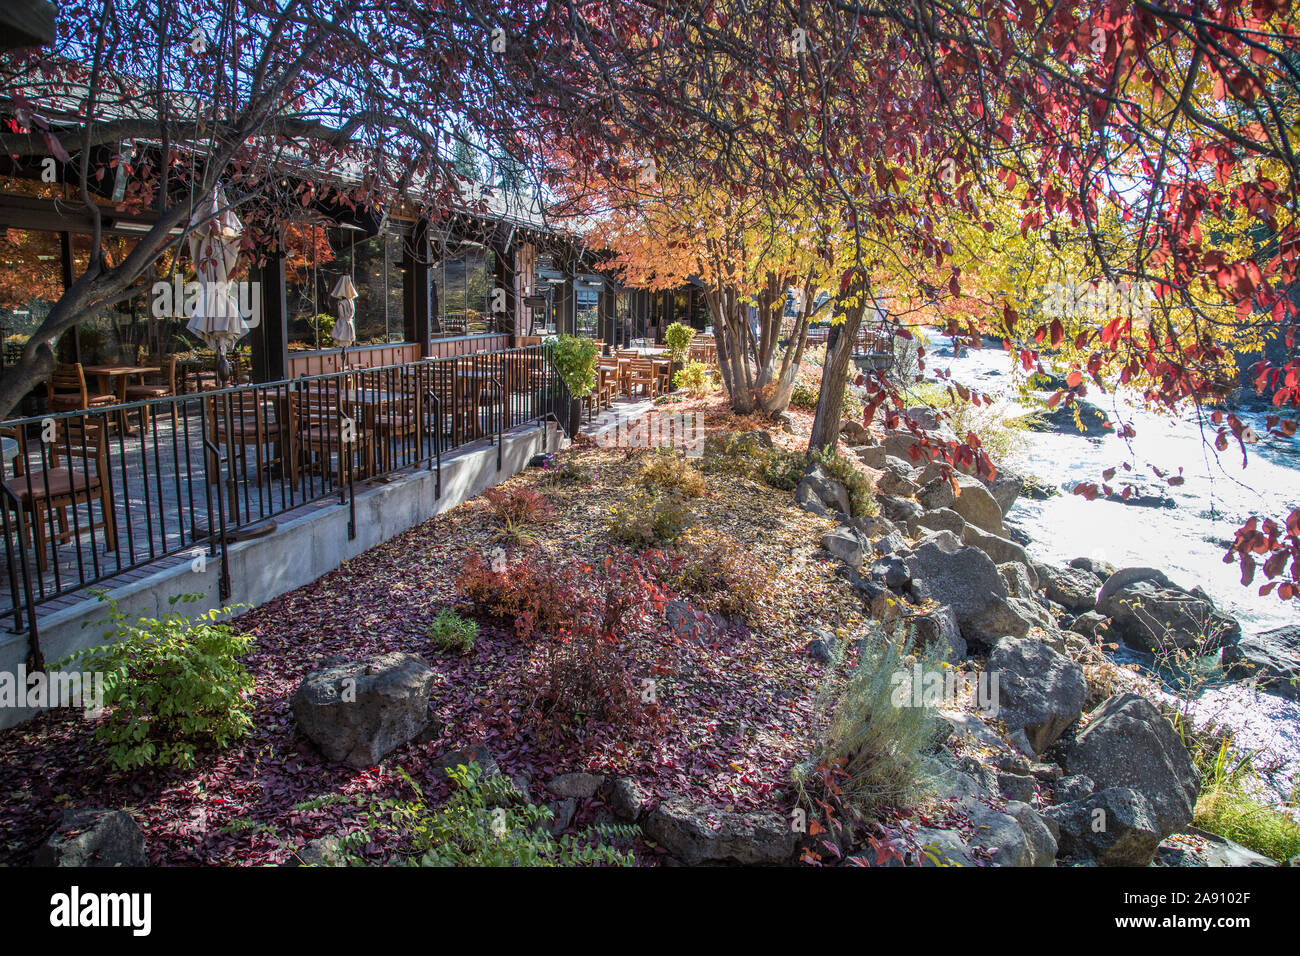 Couleurs d'automne à l'extérieur de la Riverhouse sur le Deschutes, un hôtel de premier choix à Bend, Oregon, sur la rivière Deschutes. Banque D'Images